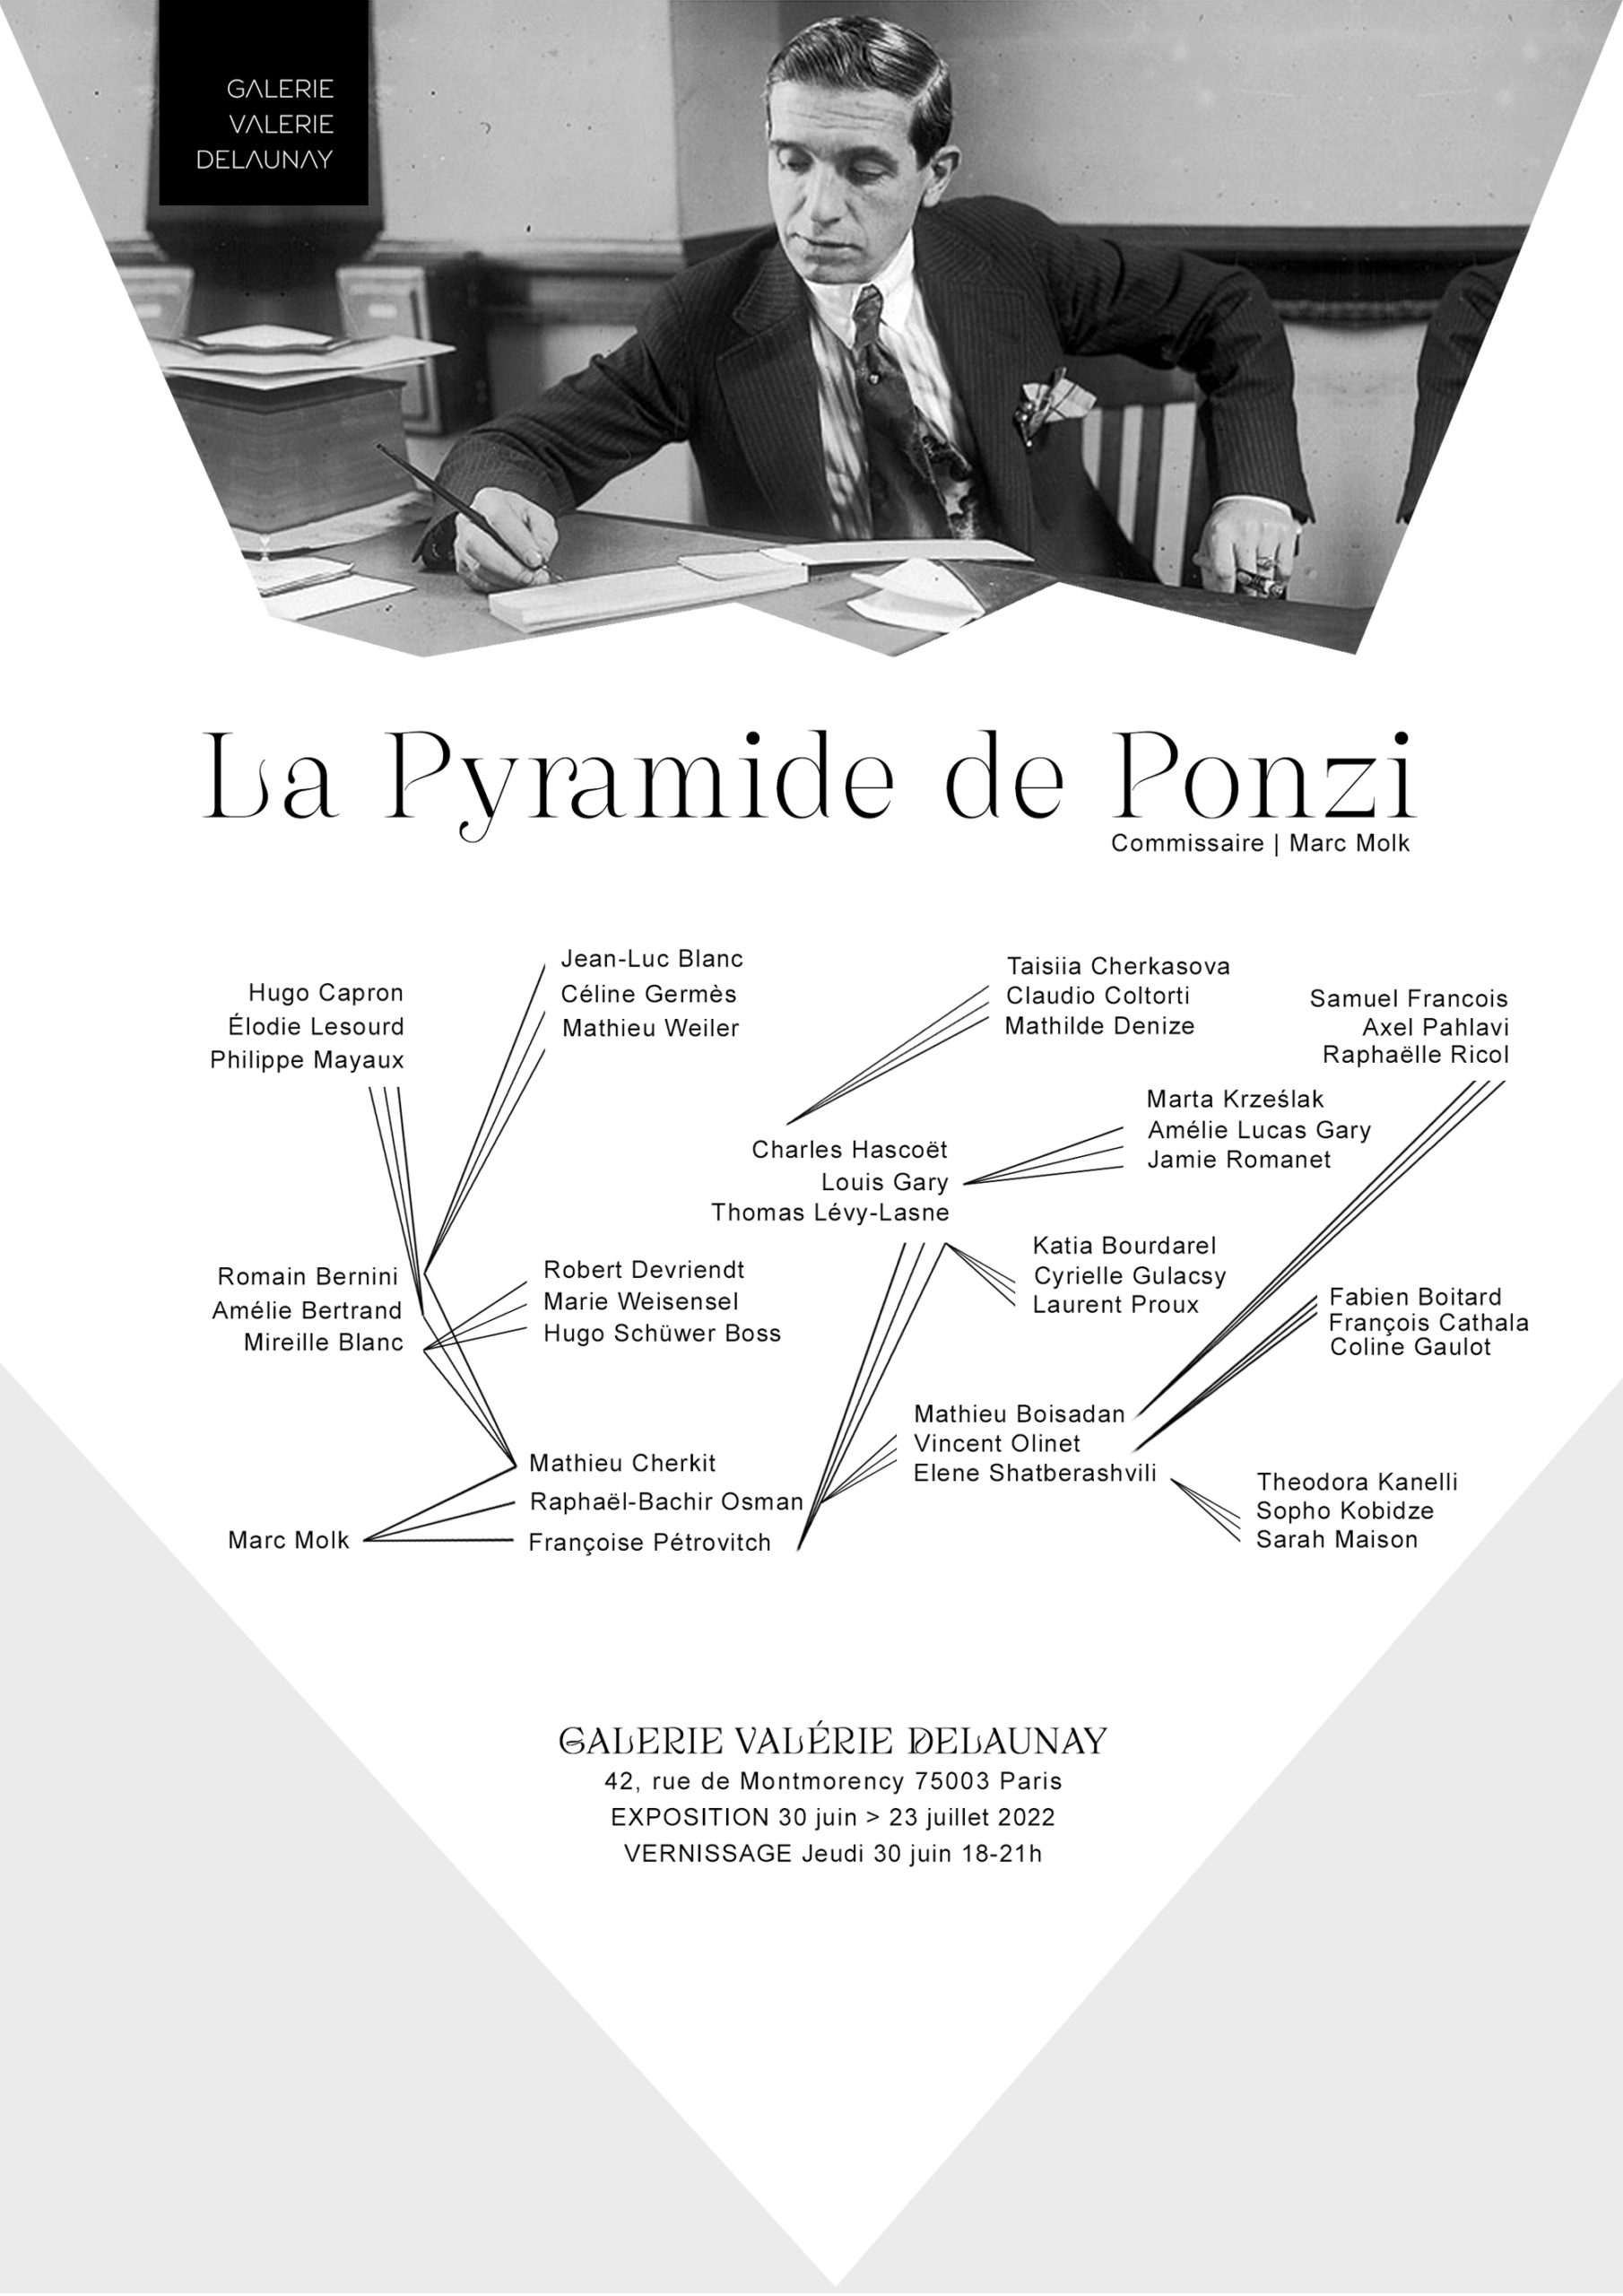 LA PYRAMIDE DE PONZI / Valérie Delaunay Gallery